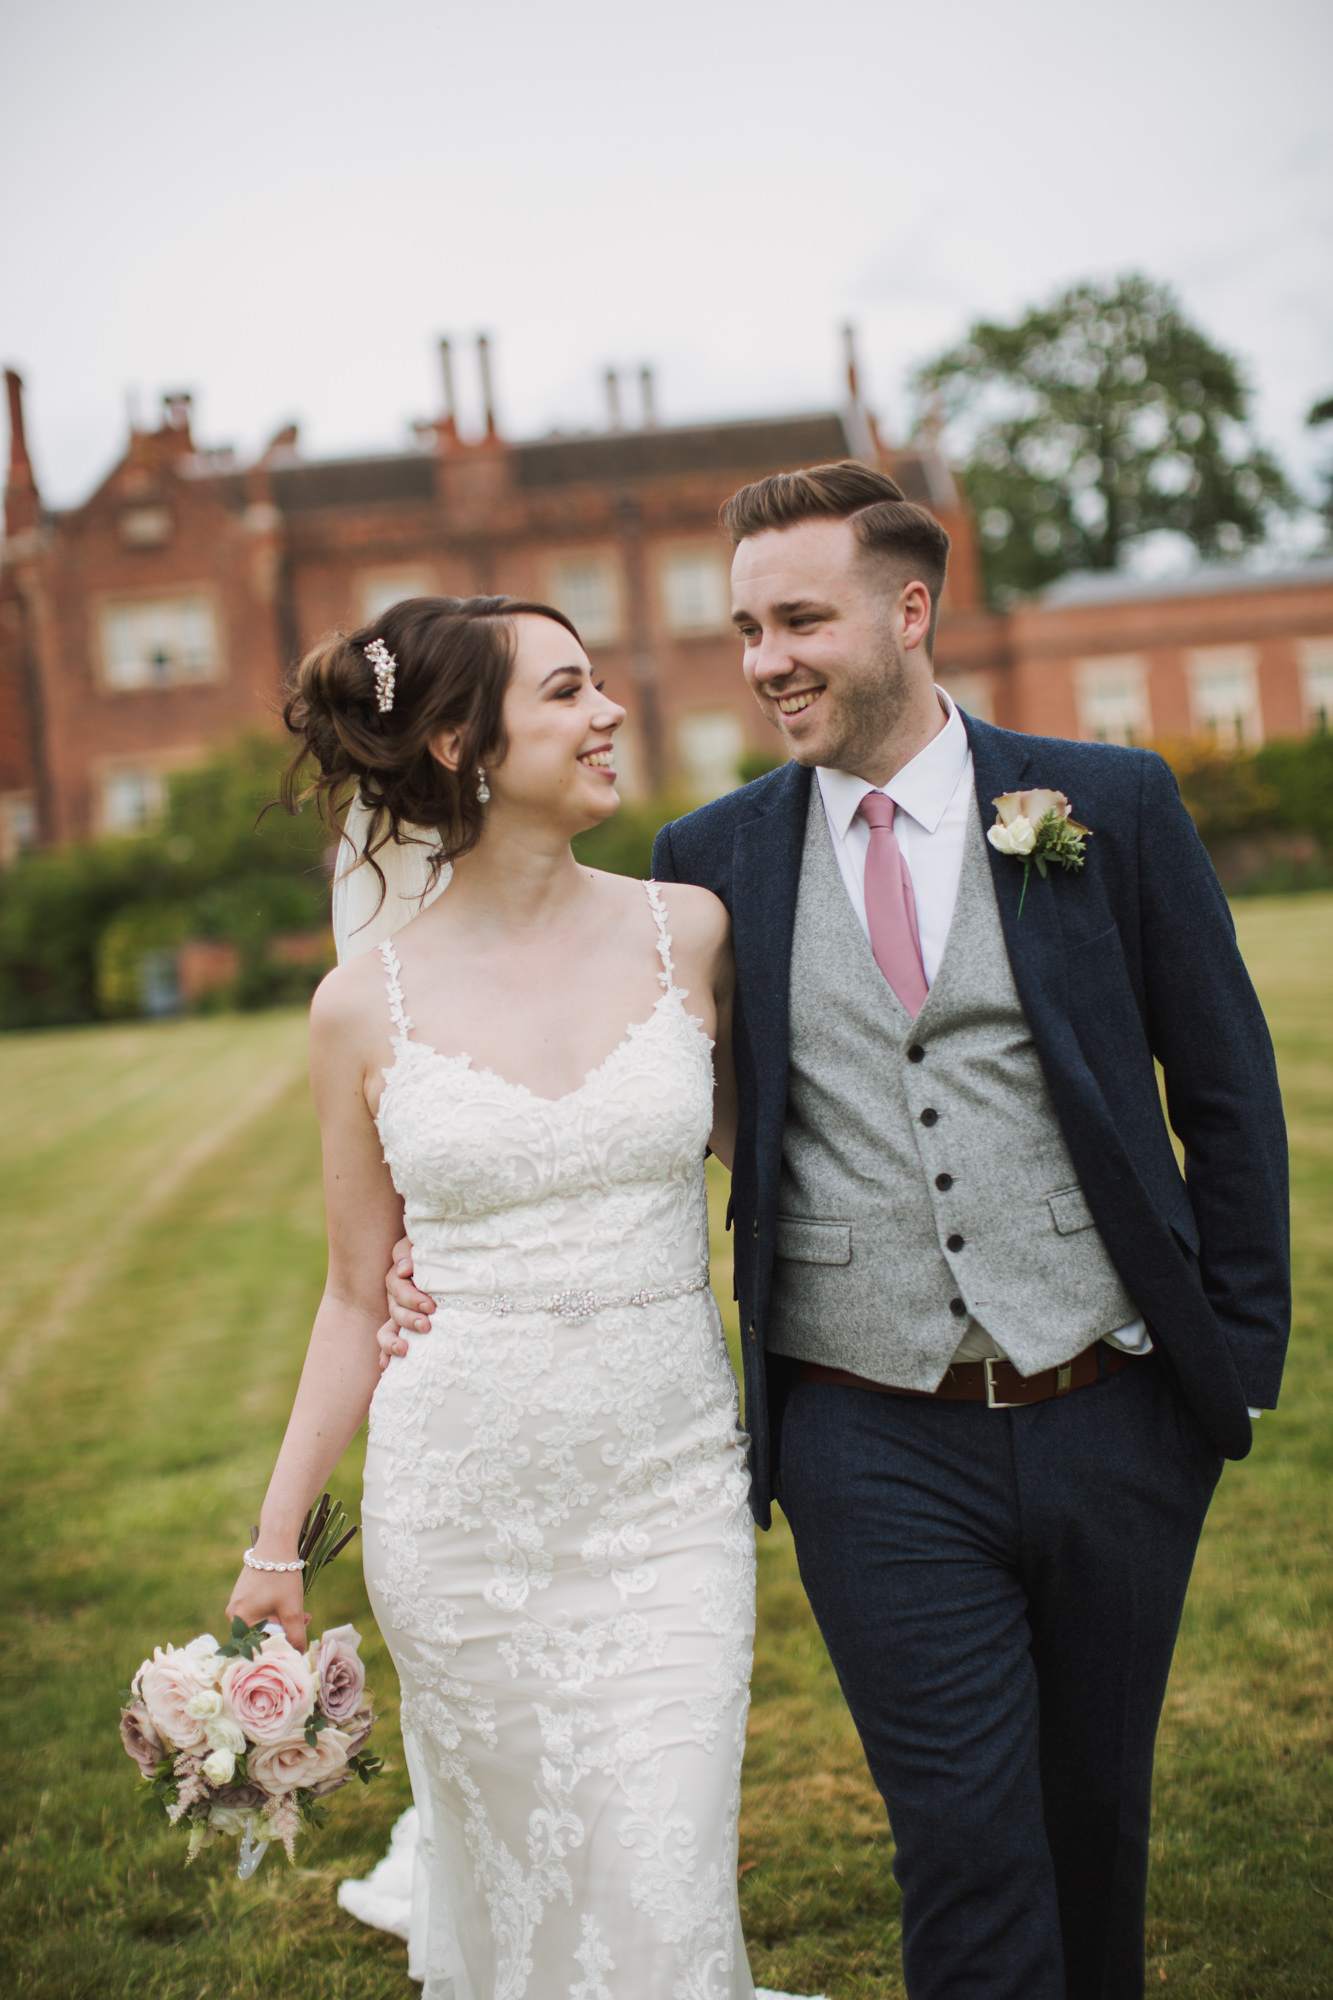 Wedding photographers Yorkshire